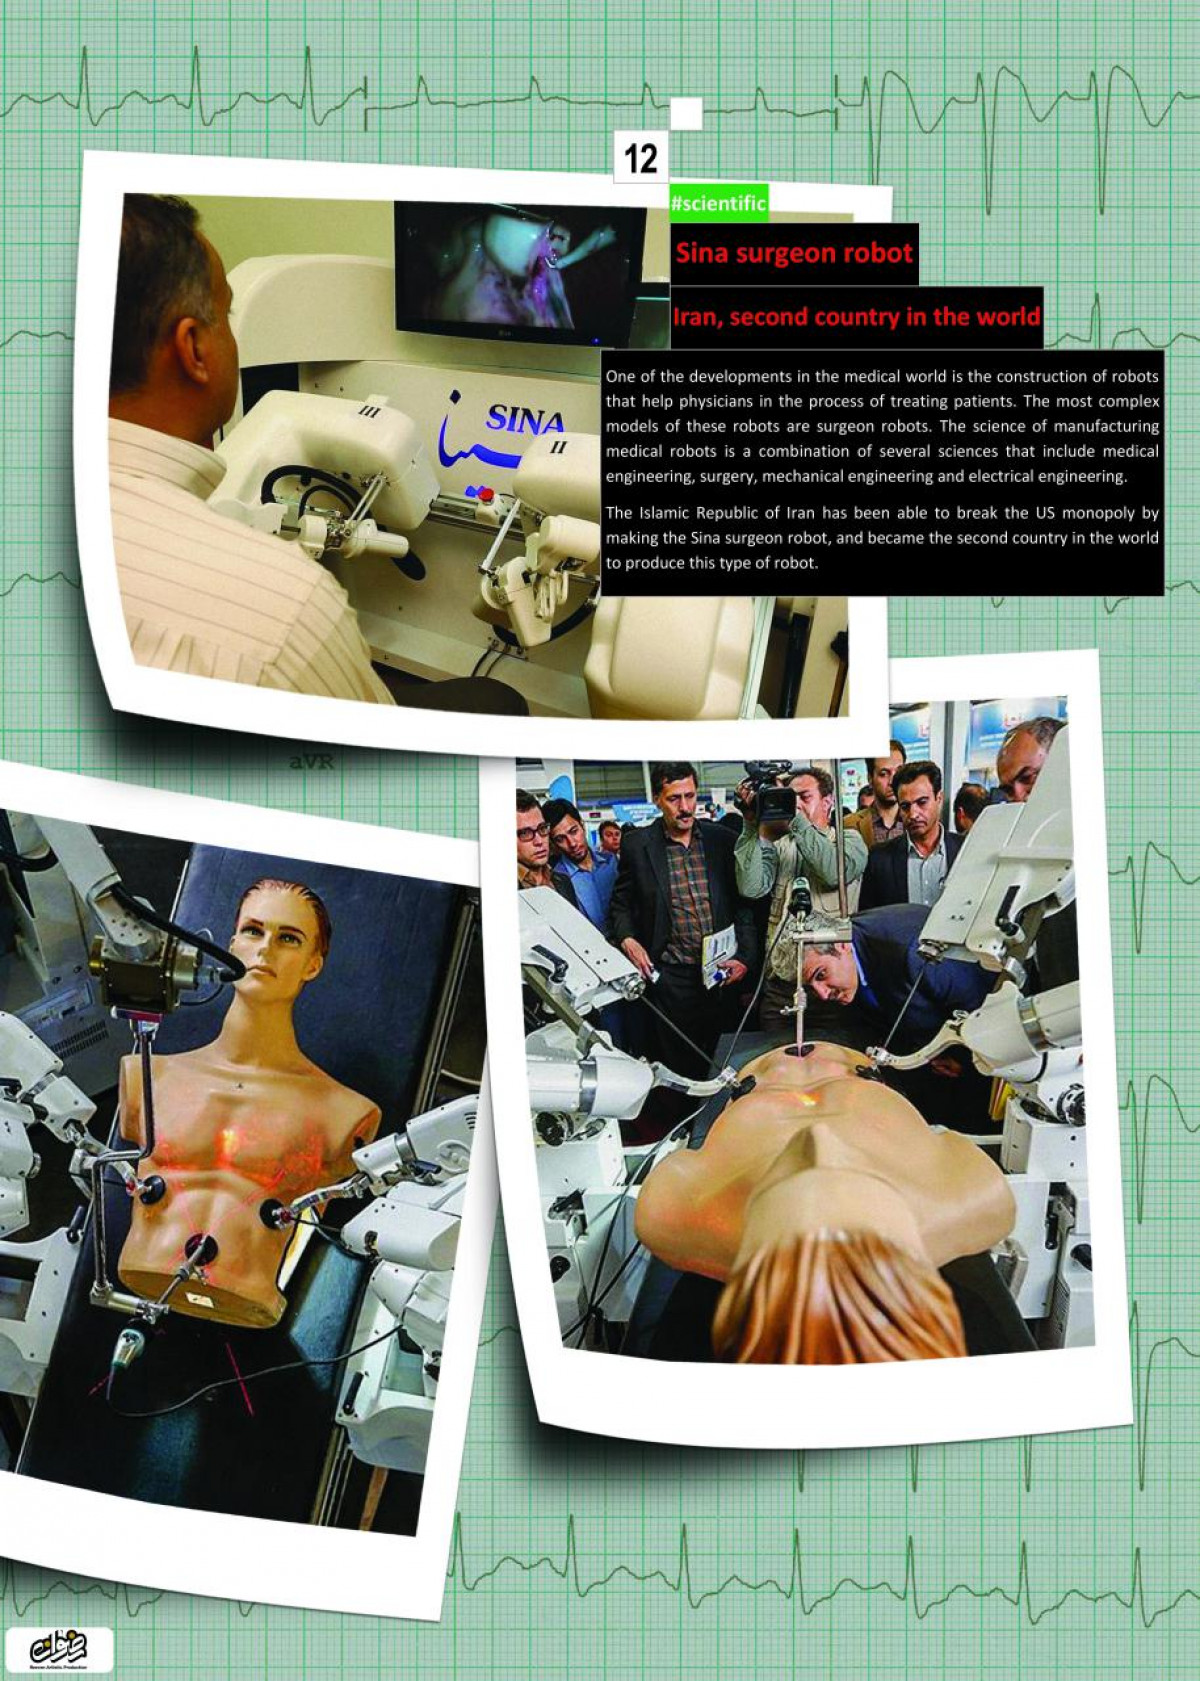 Sina surgeon robot